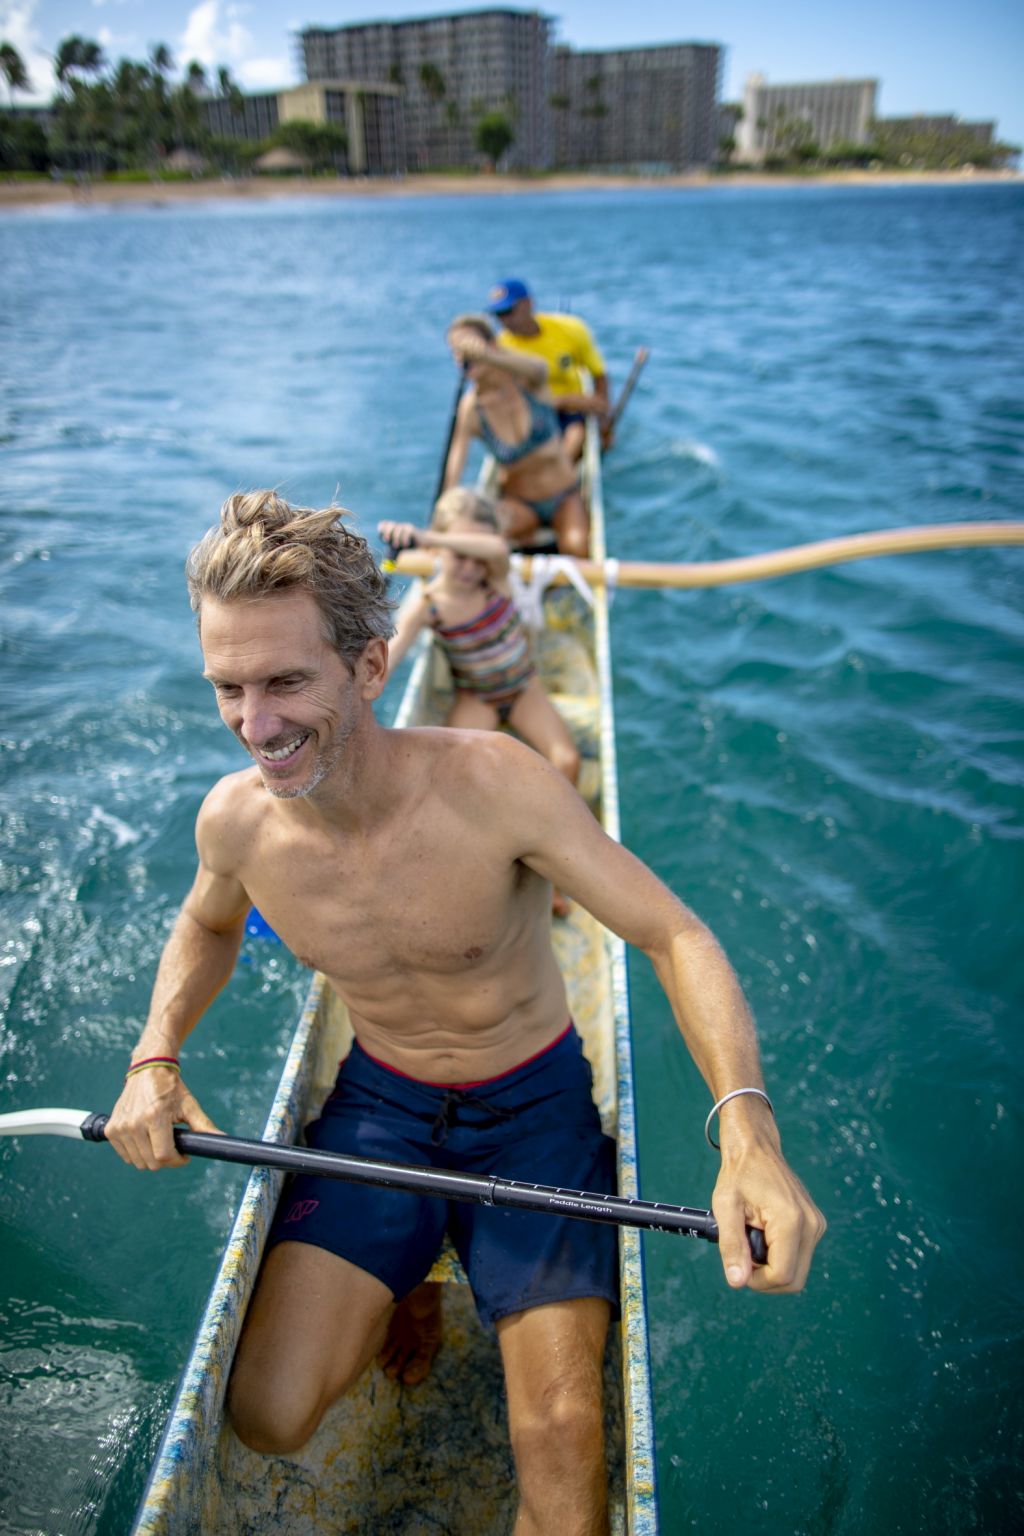 Typisch für das Inselarchipel Hawai’i ist neben Surfen auch das Paddeln im Outrigger Canoe. Diese Ausle-gerkanus, auf Hawaiianisch „Waʻa“ genannt, ermöglichen ein ganz besonderes Erlebnis im Pazifischen Ozean